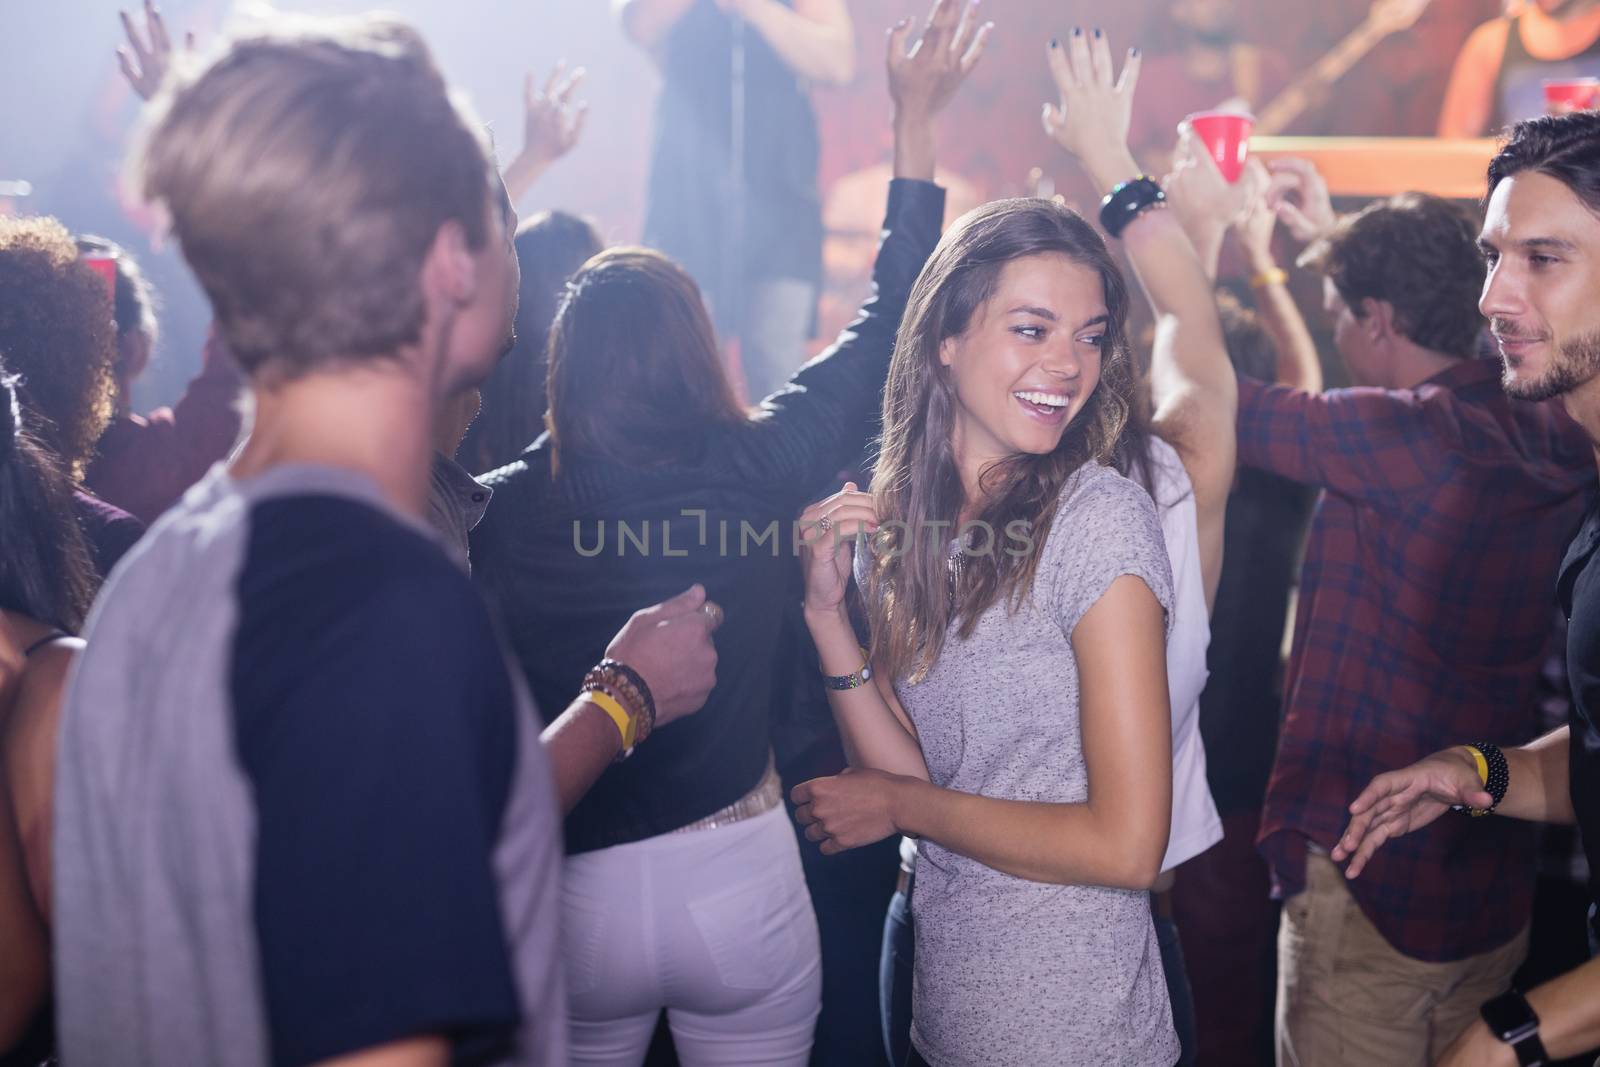 Happy people dancing at nightclub by Wavebreakmedia